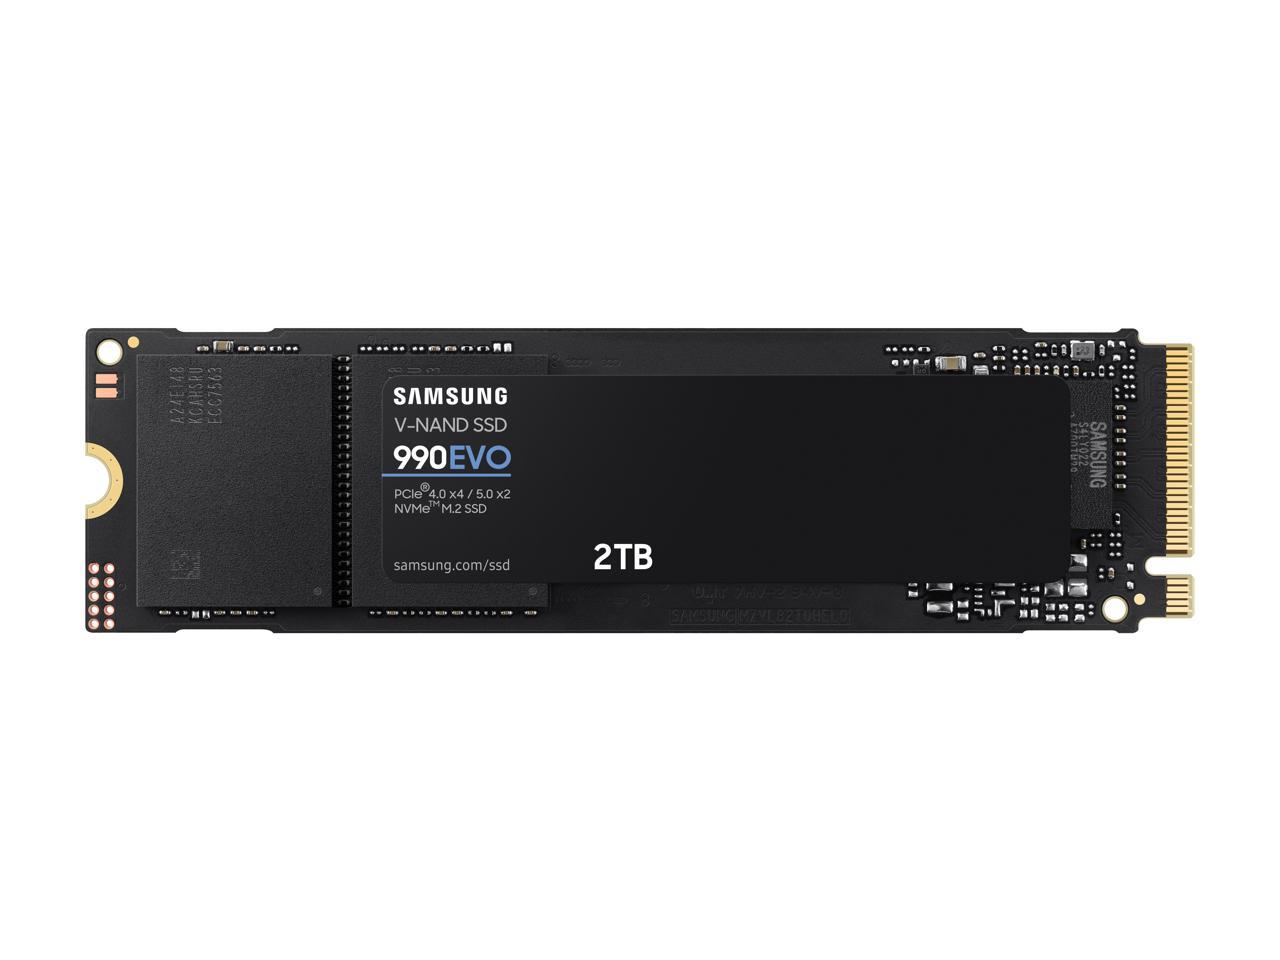 2TB SAMSUNG SSD 990 EVO, PCIe 5.0 M.2 2280 $142 + Free Shipping